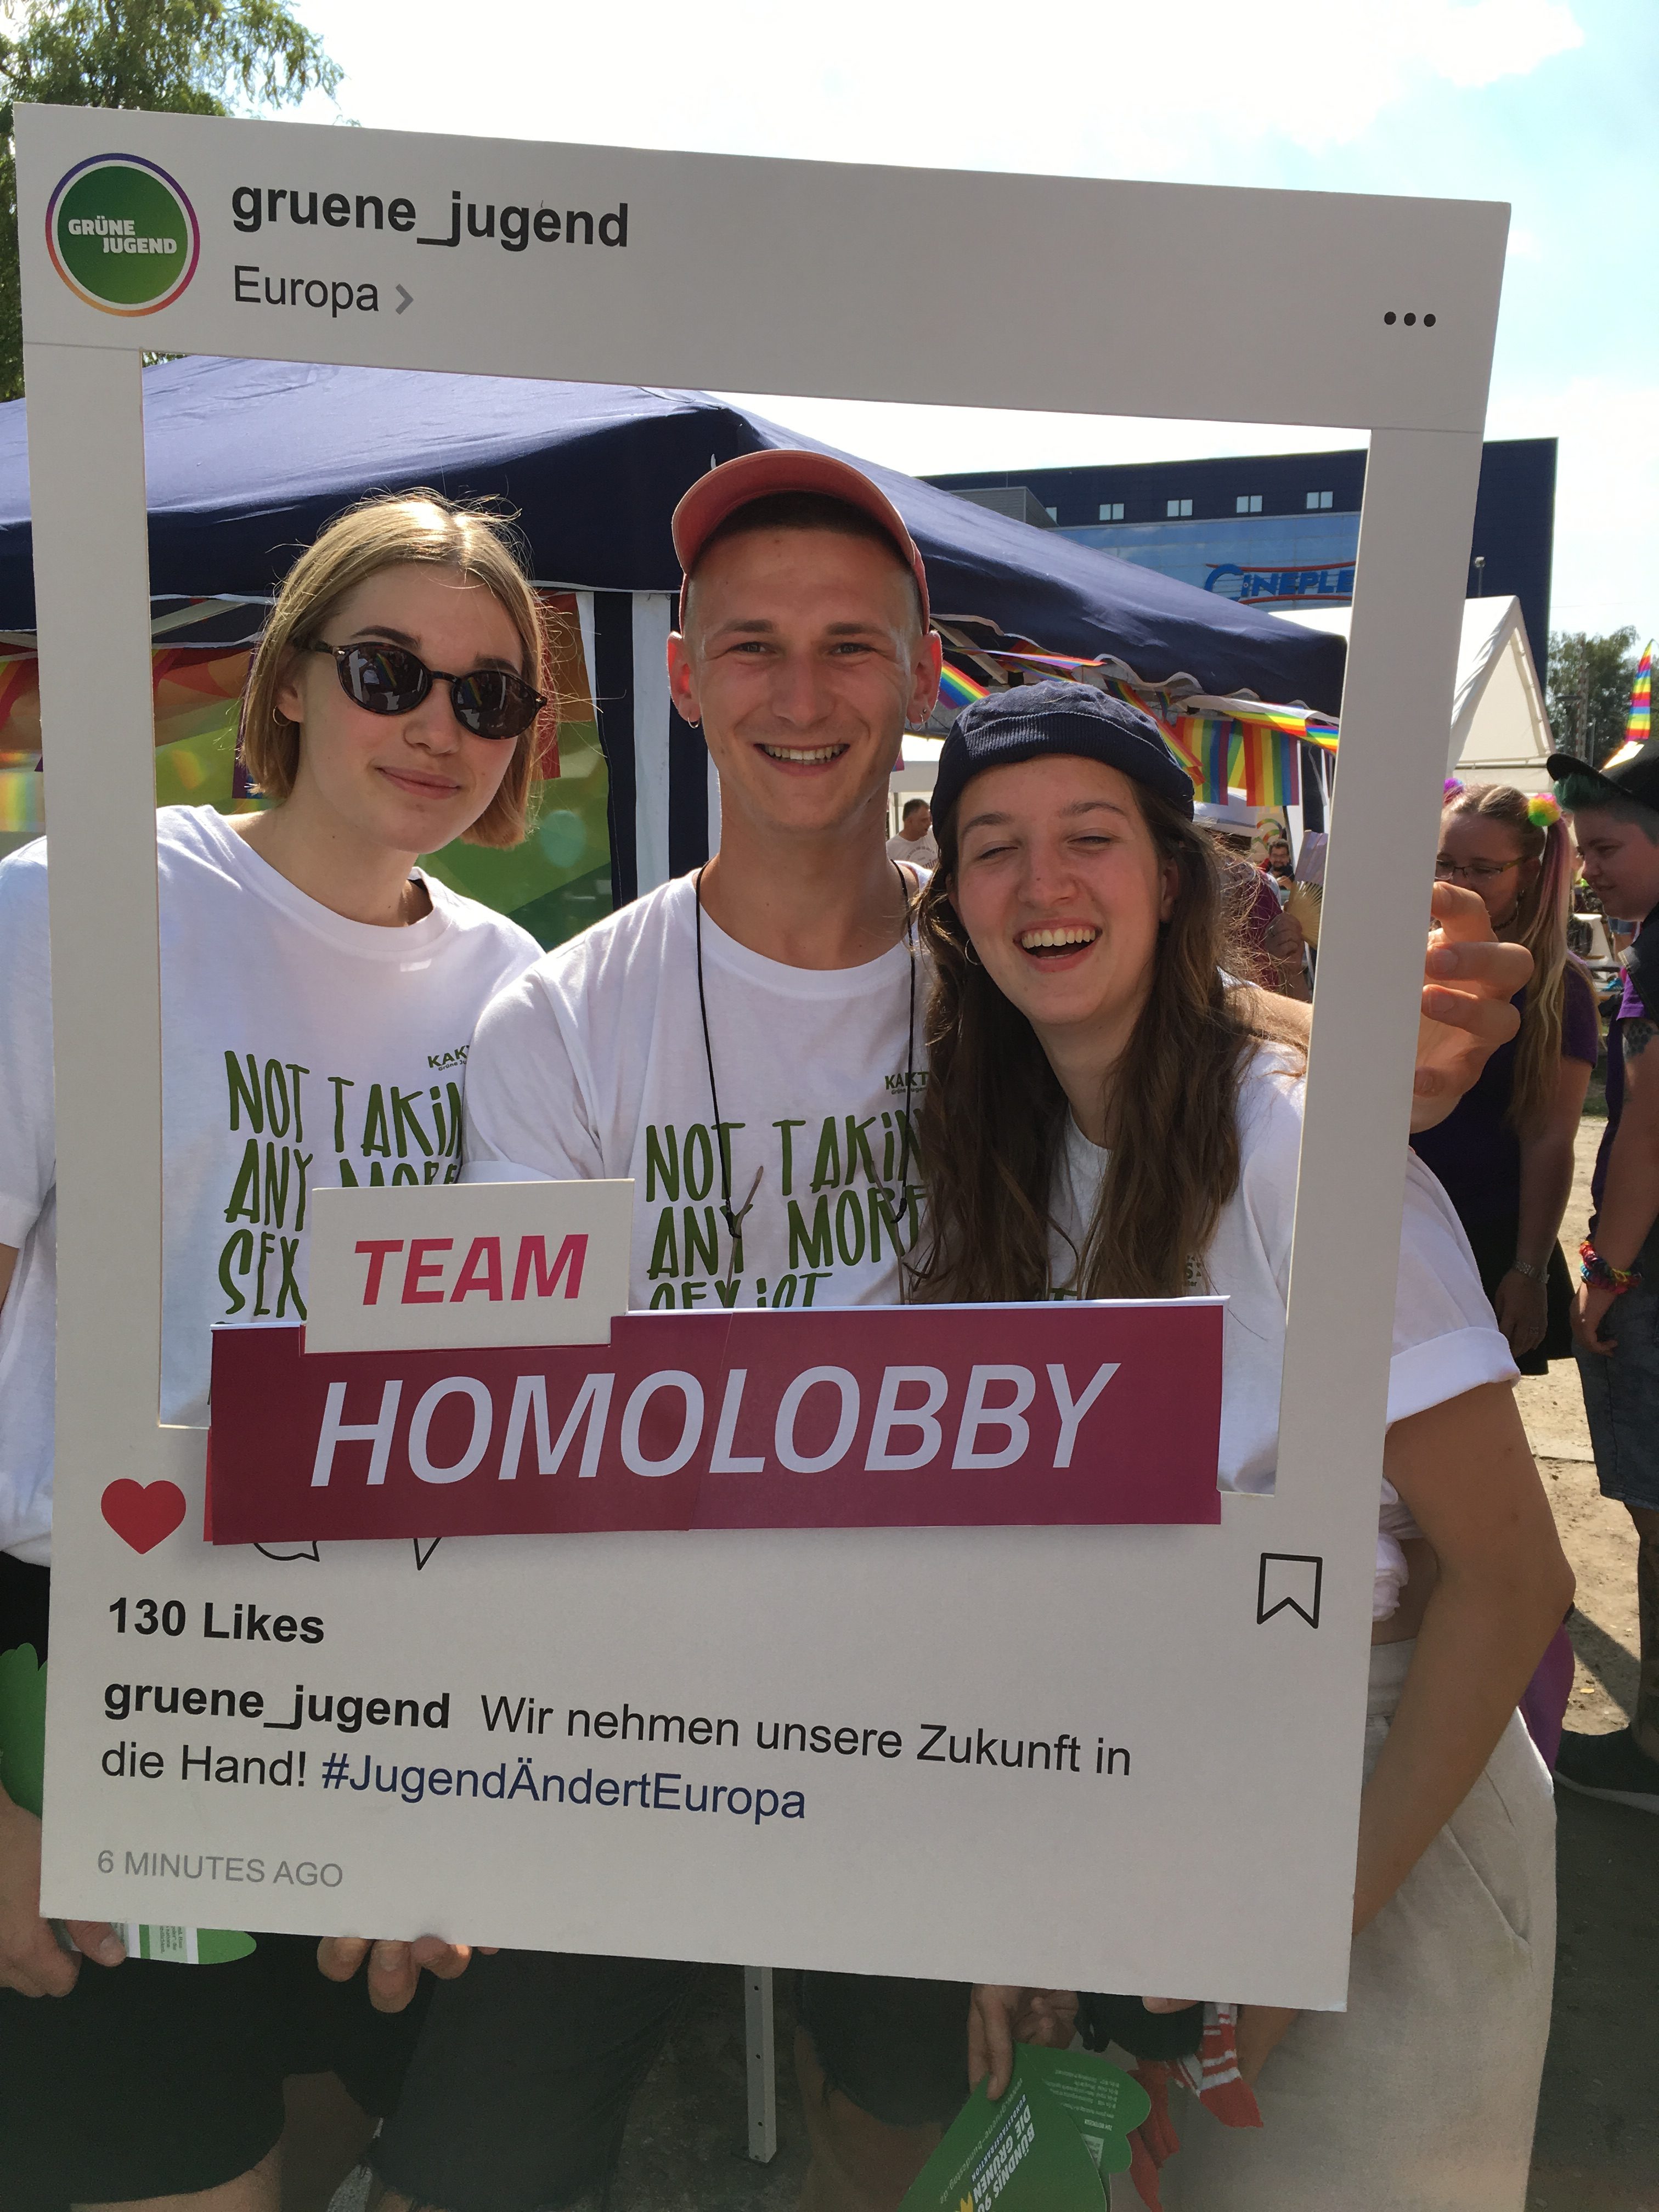 Drei Kakteen halten einen Bilderrahmen der Grünen Jugend. Auf dem Bilderrahmen steht Team Homolobby.